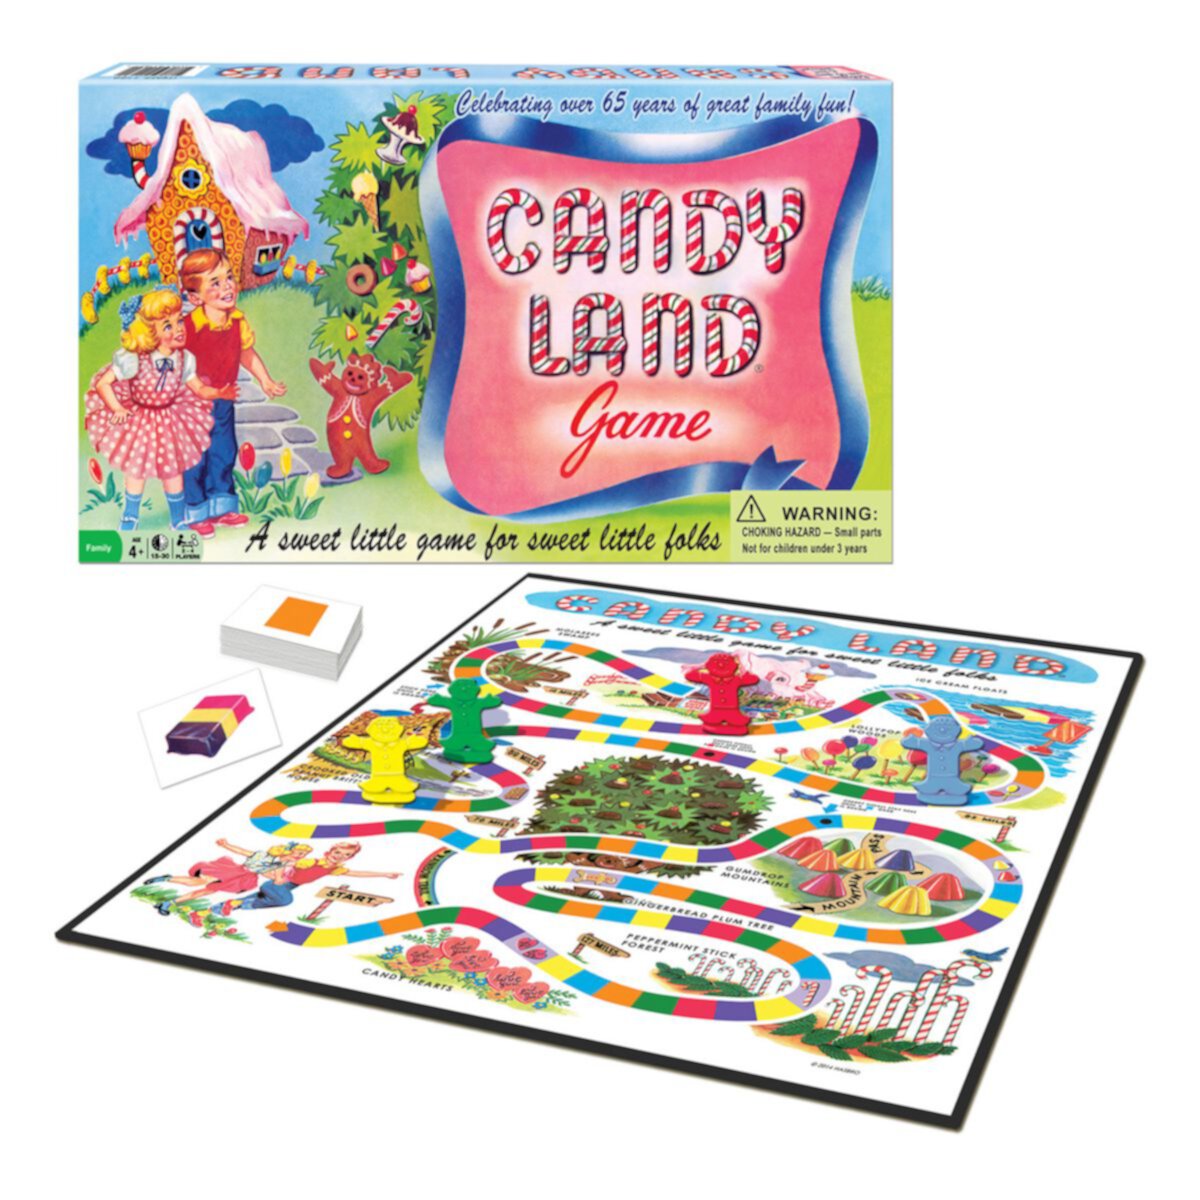 К 65-летию Candy Land, выиграв ходы Winning Moves